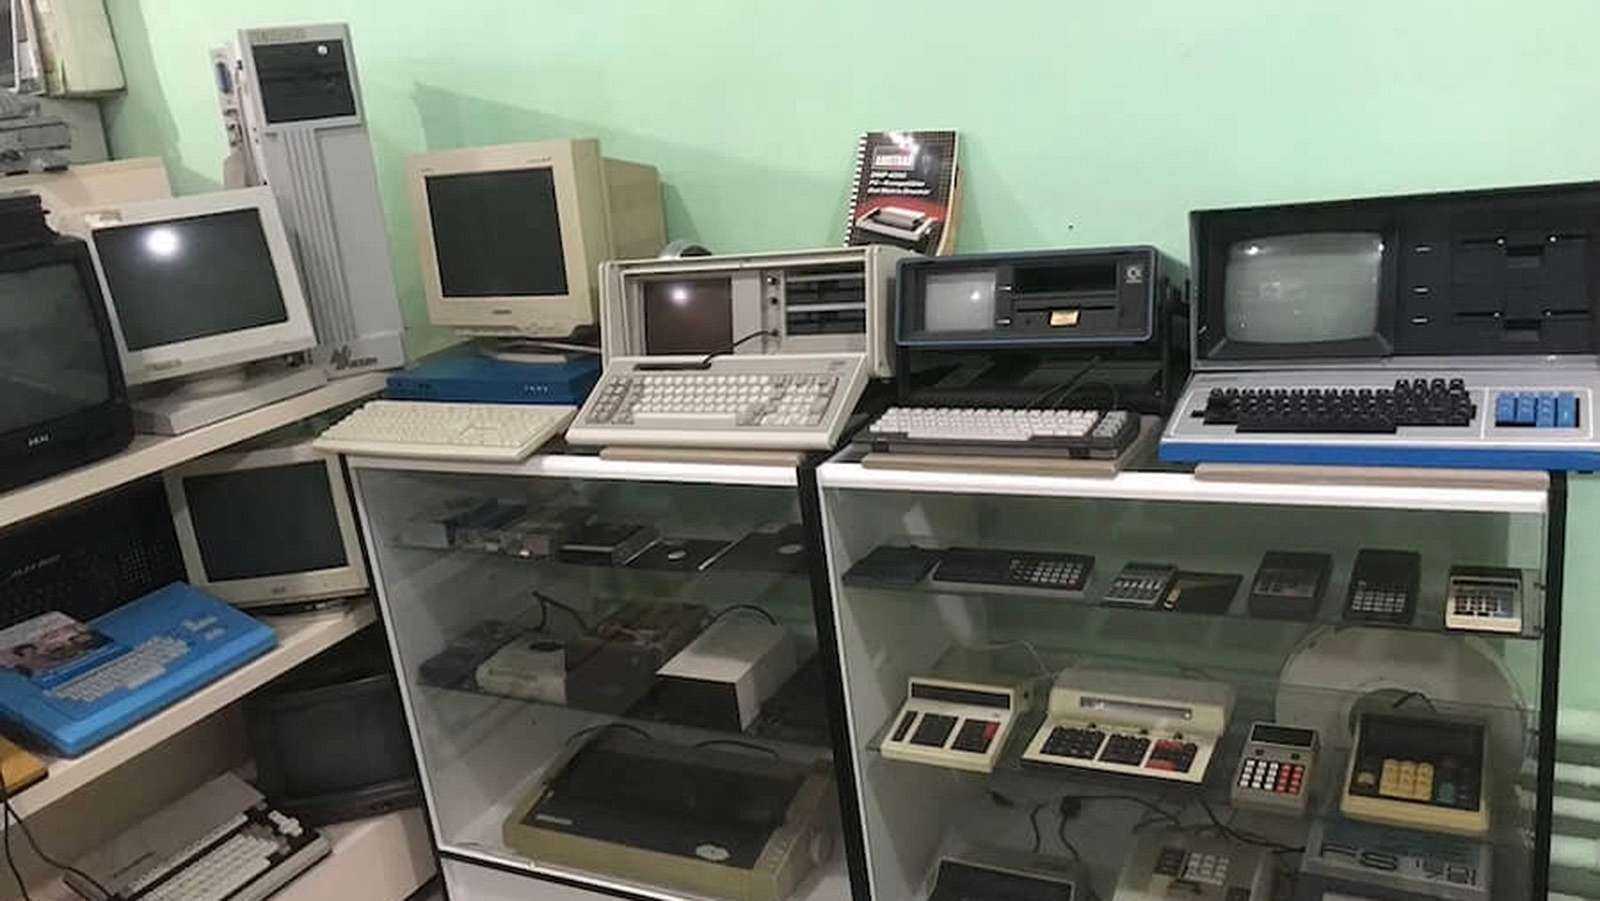 Ukrajinské muzem retro her a počítačů bylo zničeno při bombardování